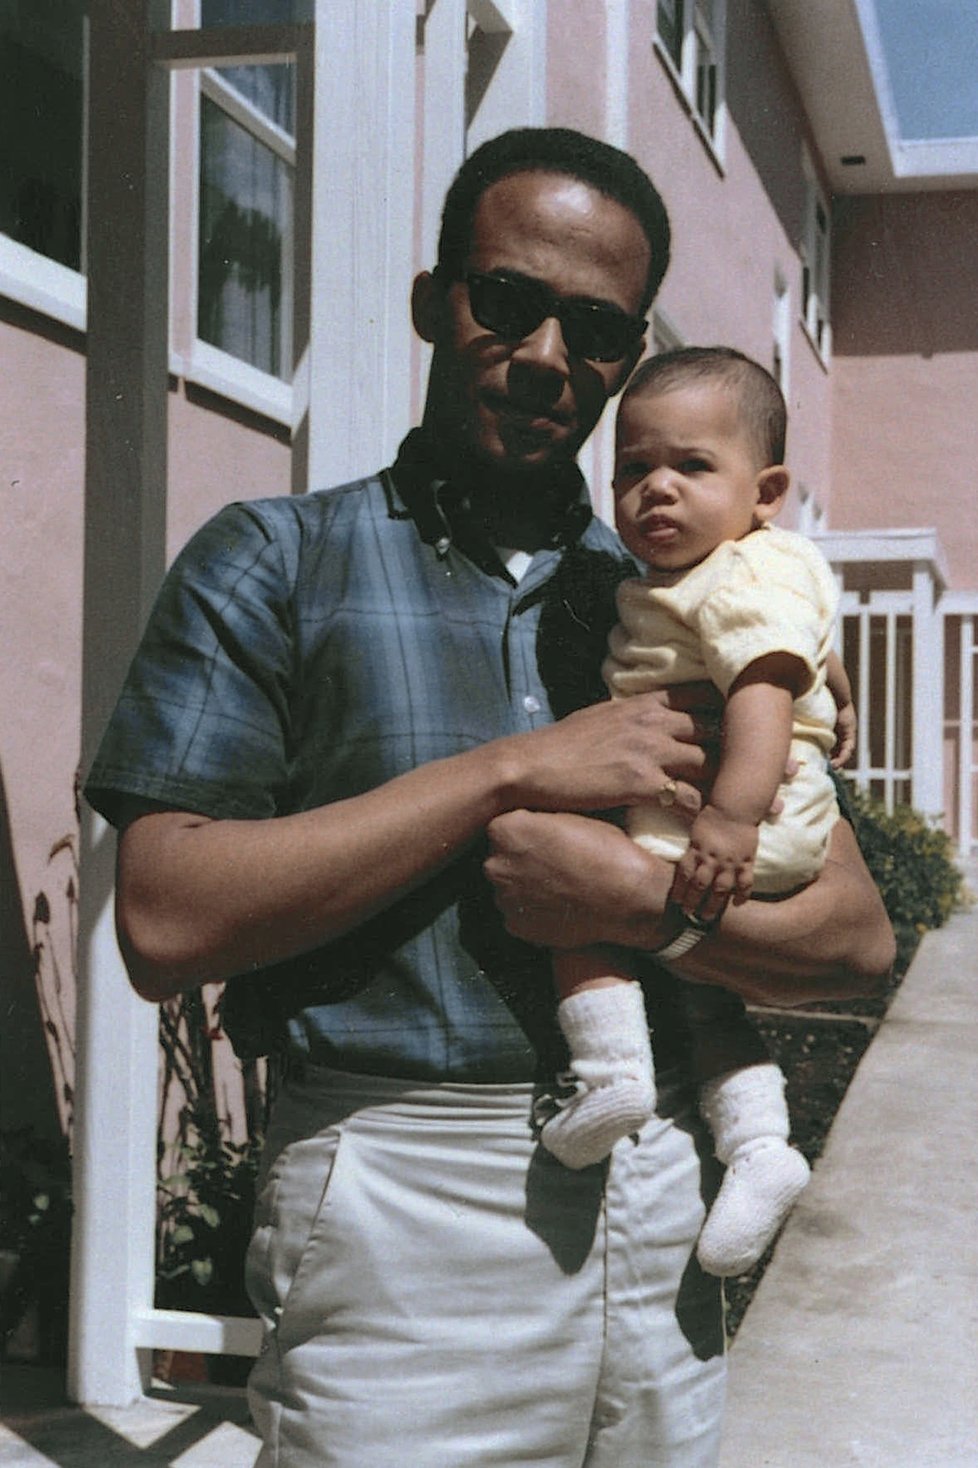 Senátorka Kamala Harrisová má šanci stát se vůbec první viceprezidentkou USA. Na archivním snímku s otcem.